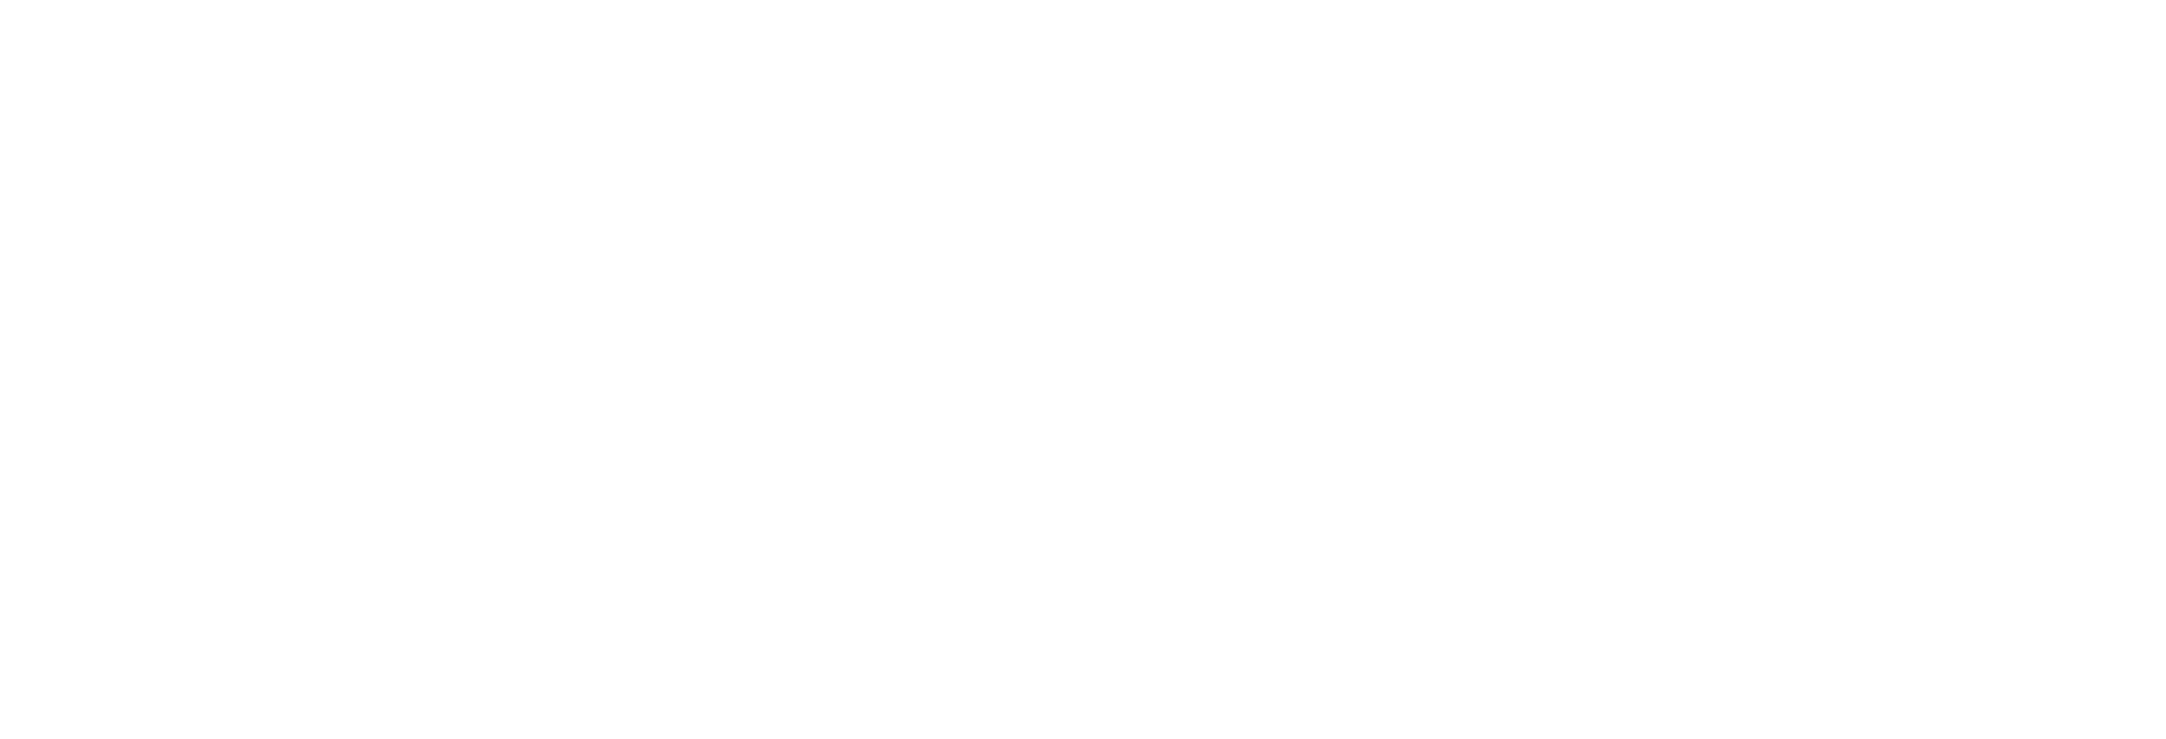 cushman wakefield logo-white